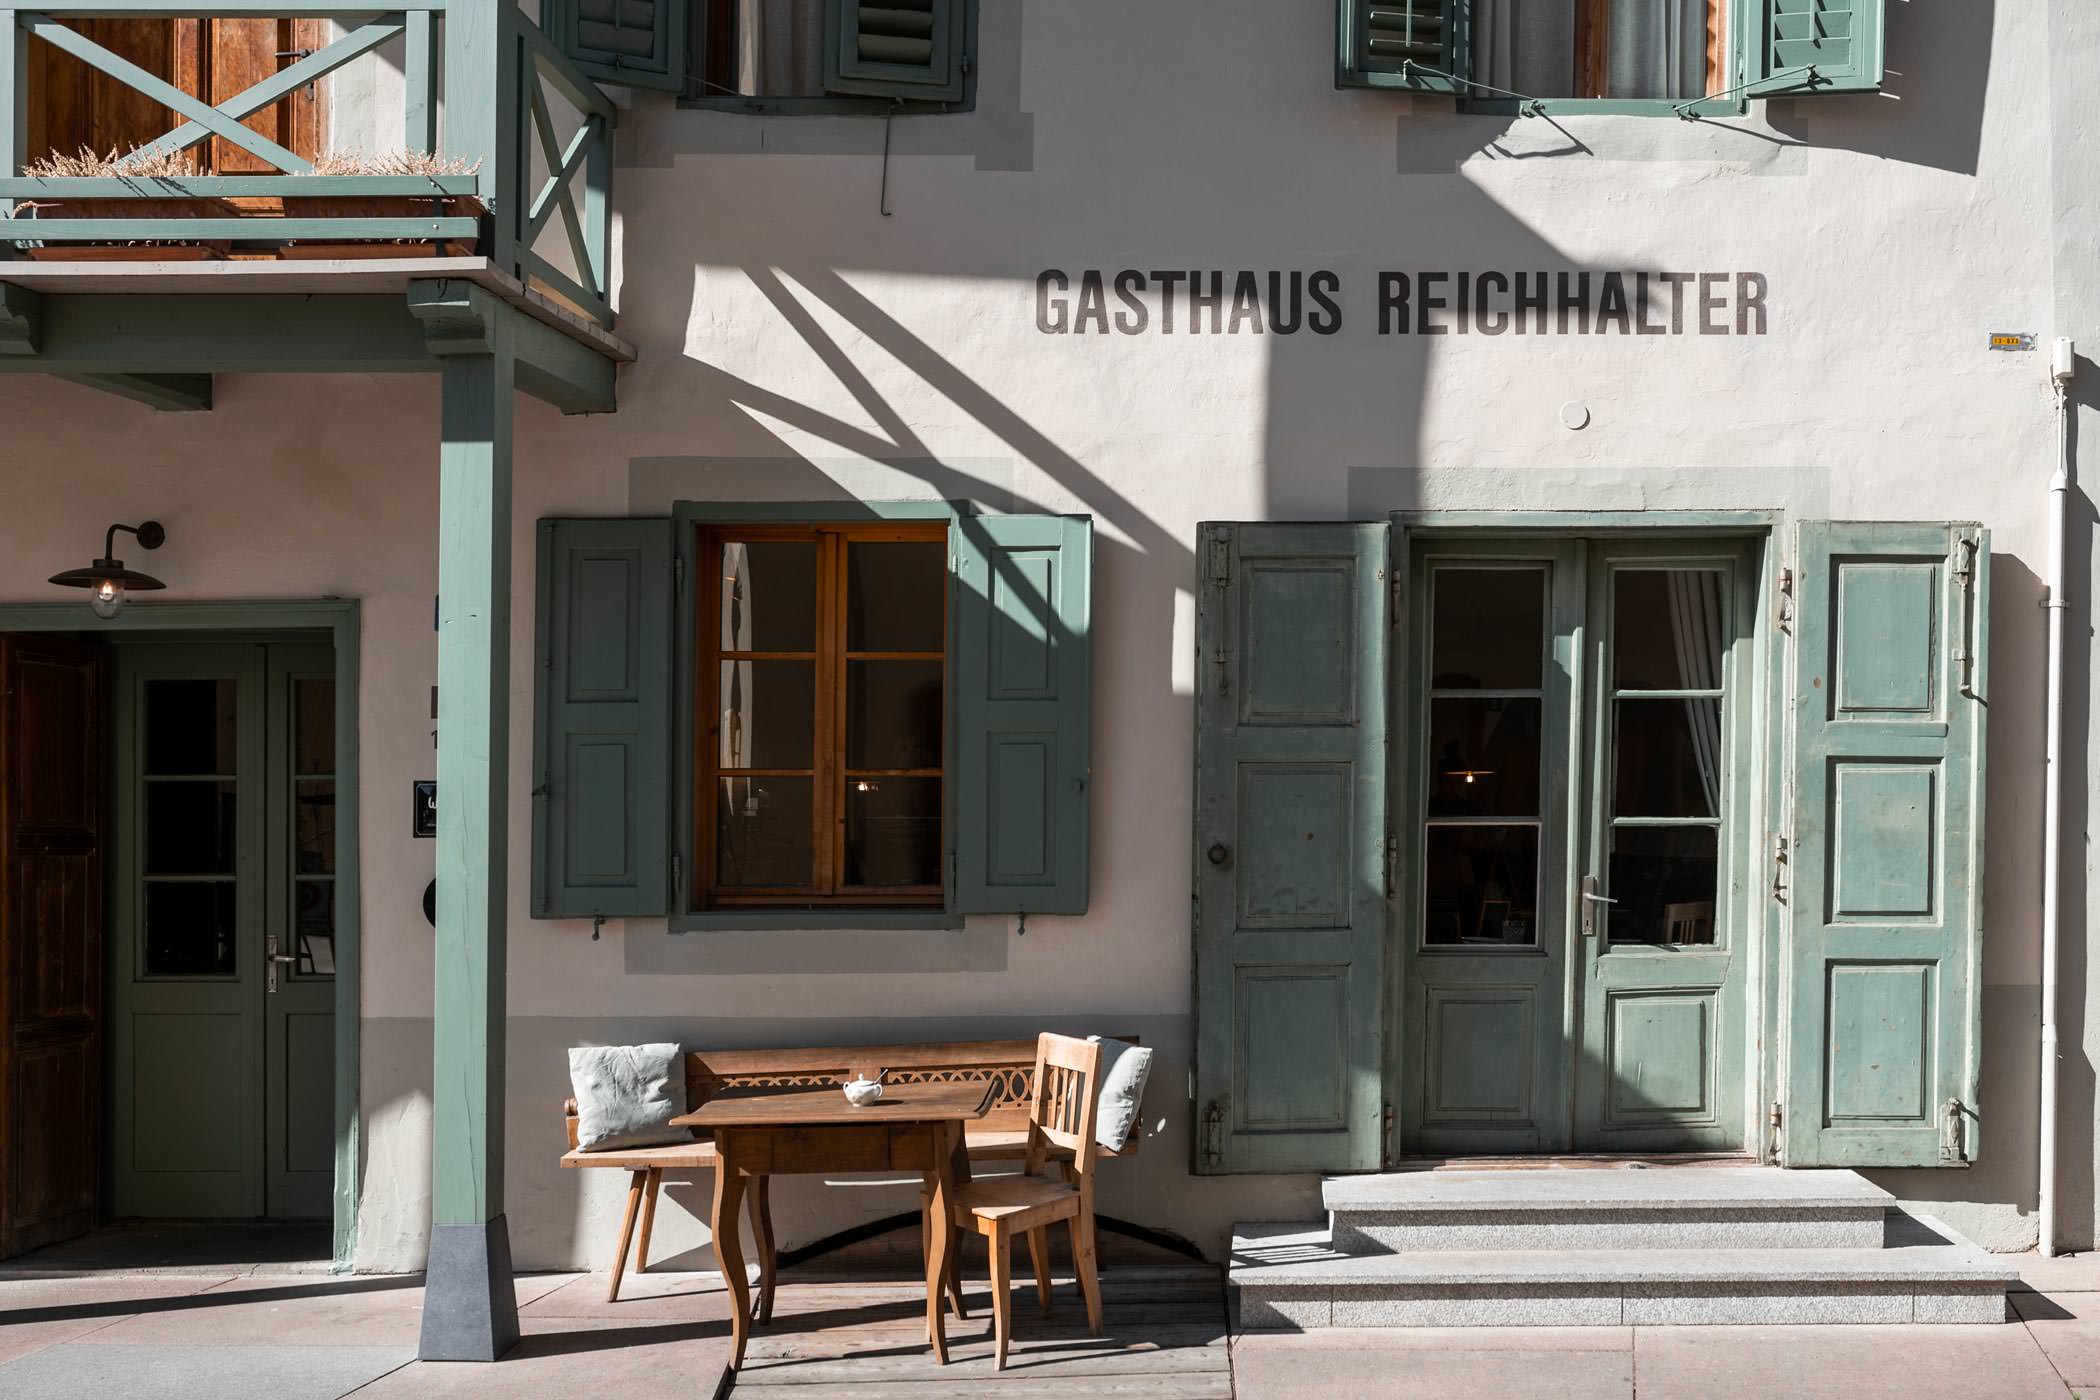 Gasthaus 1477 Reichhalter, Lana, Sud-Tyrol, Italie